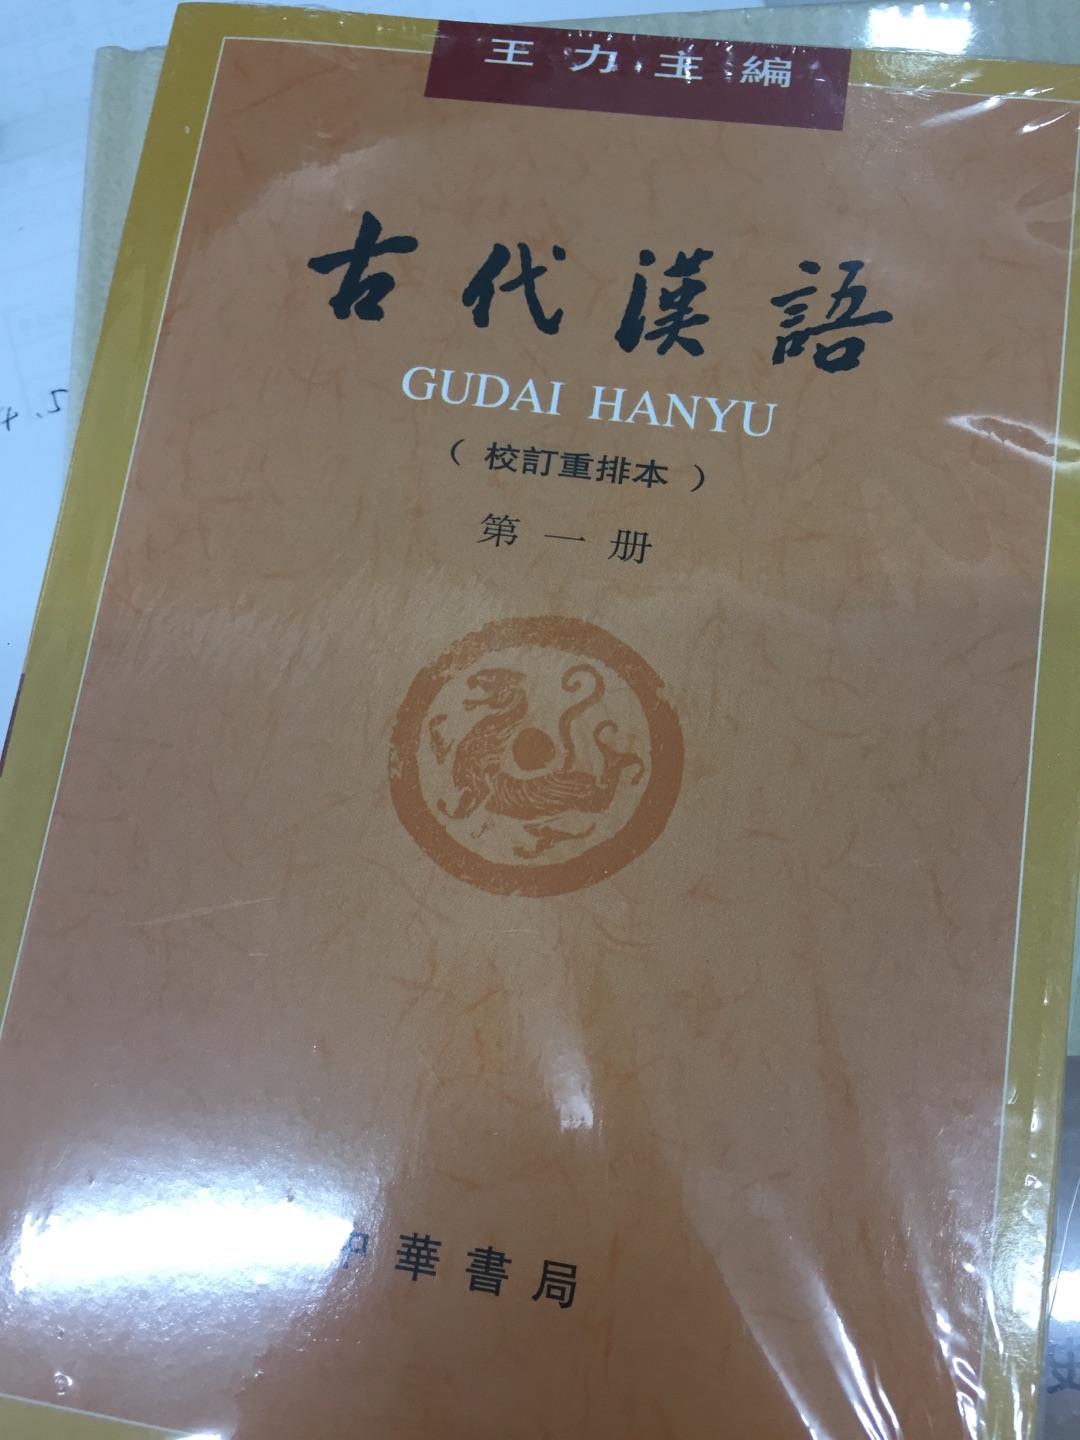 好书！古汉语教材的经典。买来学习用的，教材摸屁股的装帧，虽然不豪华，但印刷清晰。